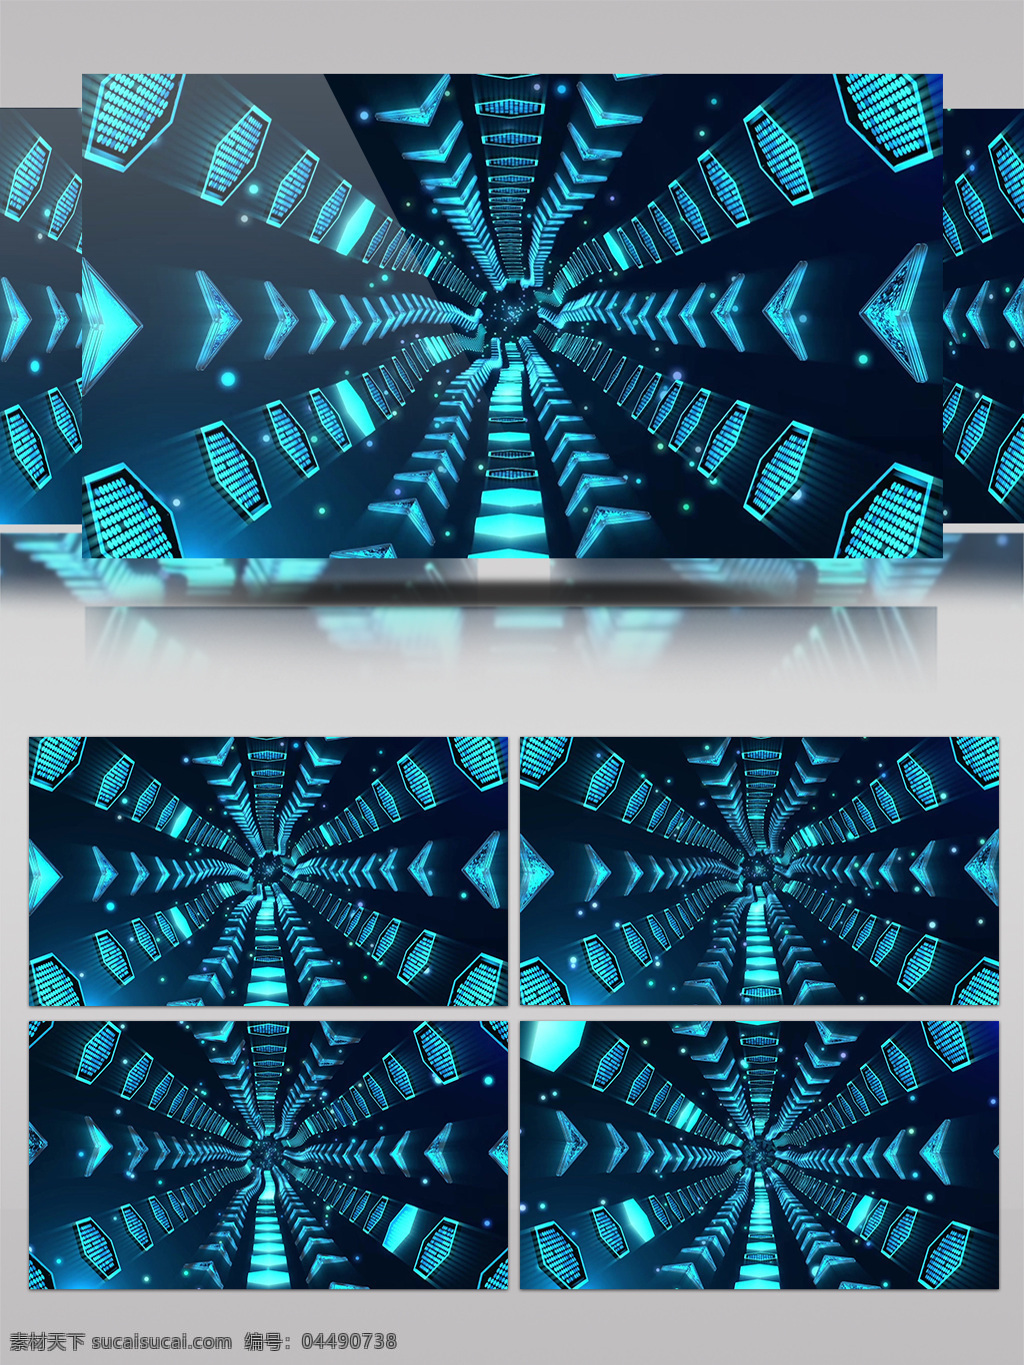 青色 波纹 发散 视频 迷离炫酷 青色水波纹 波纹特效 渲染灯光 华丽光转 三维动态类 几何魔法 空间几何变换 3d视频素材 特效视频素材